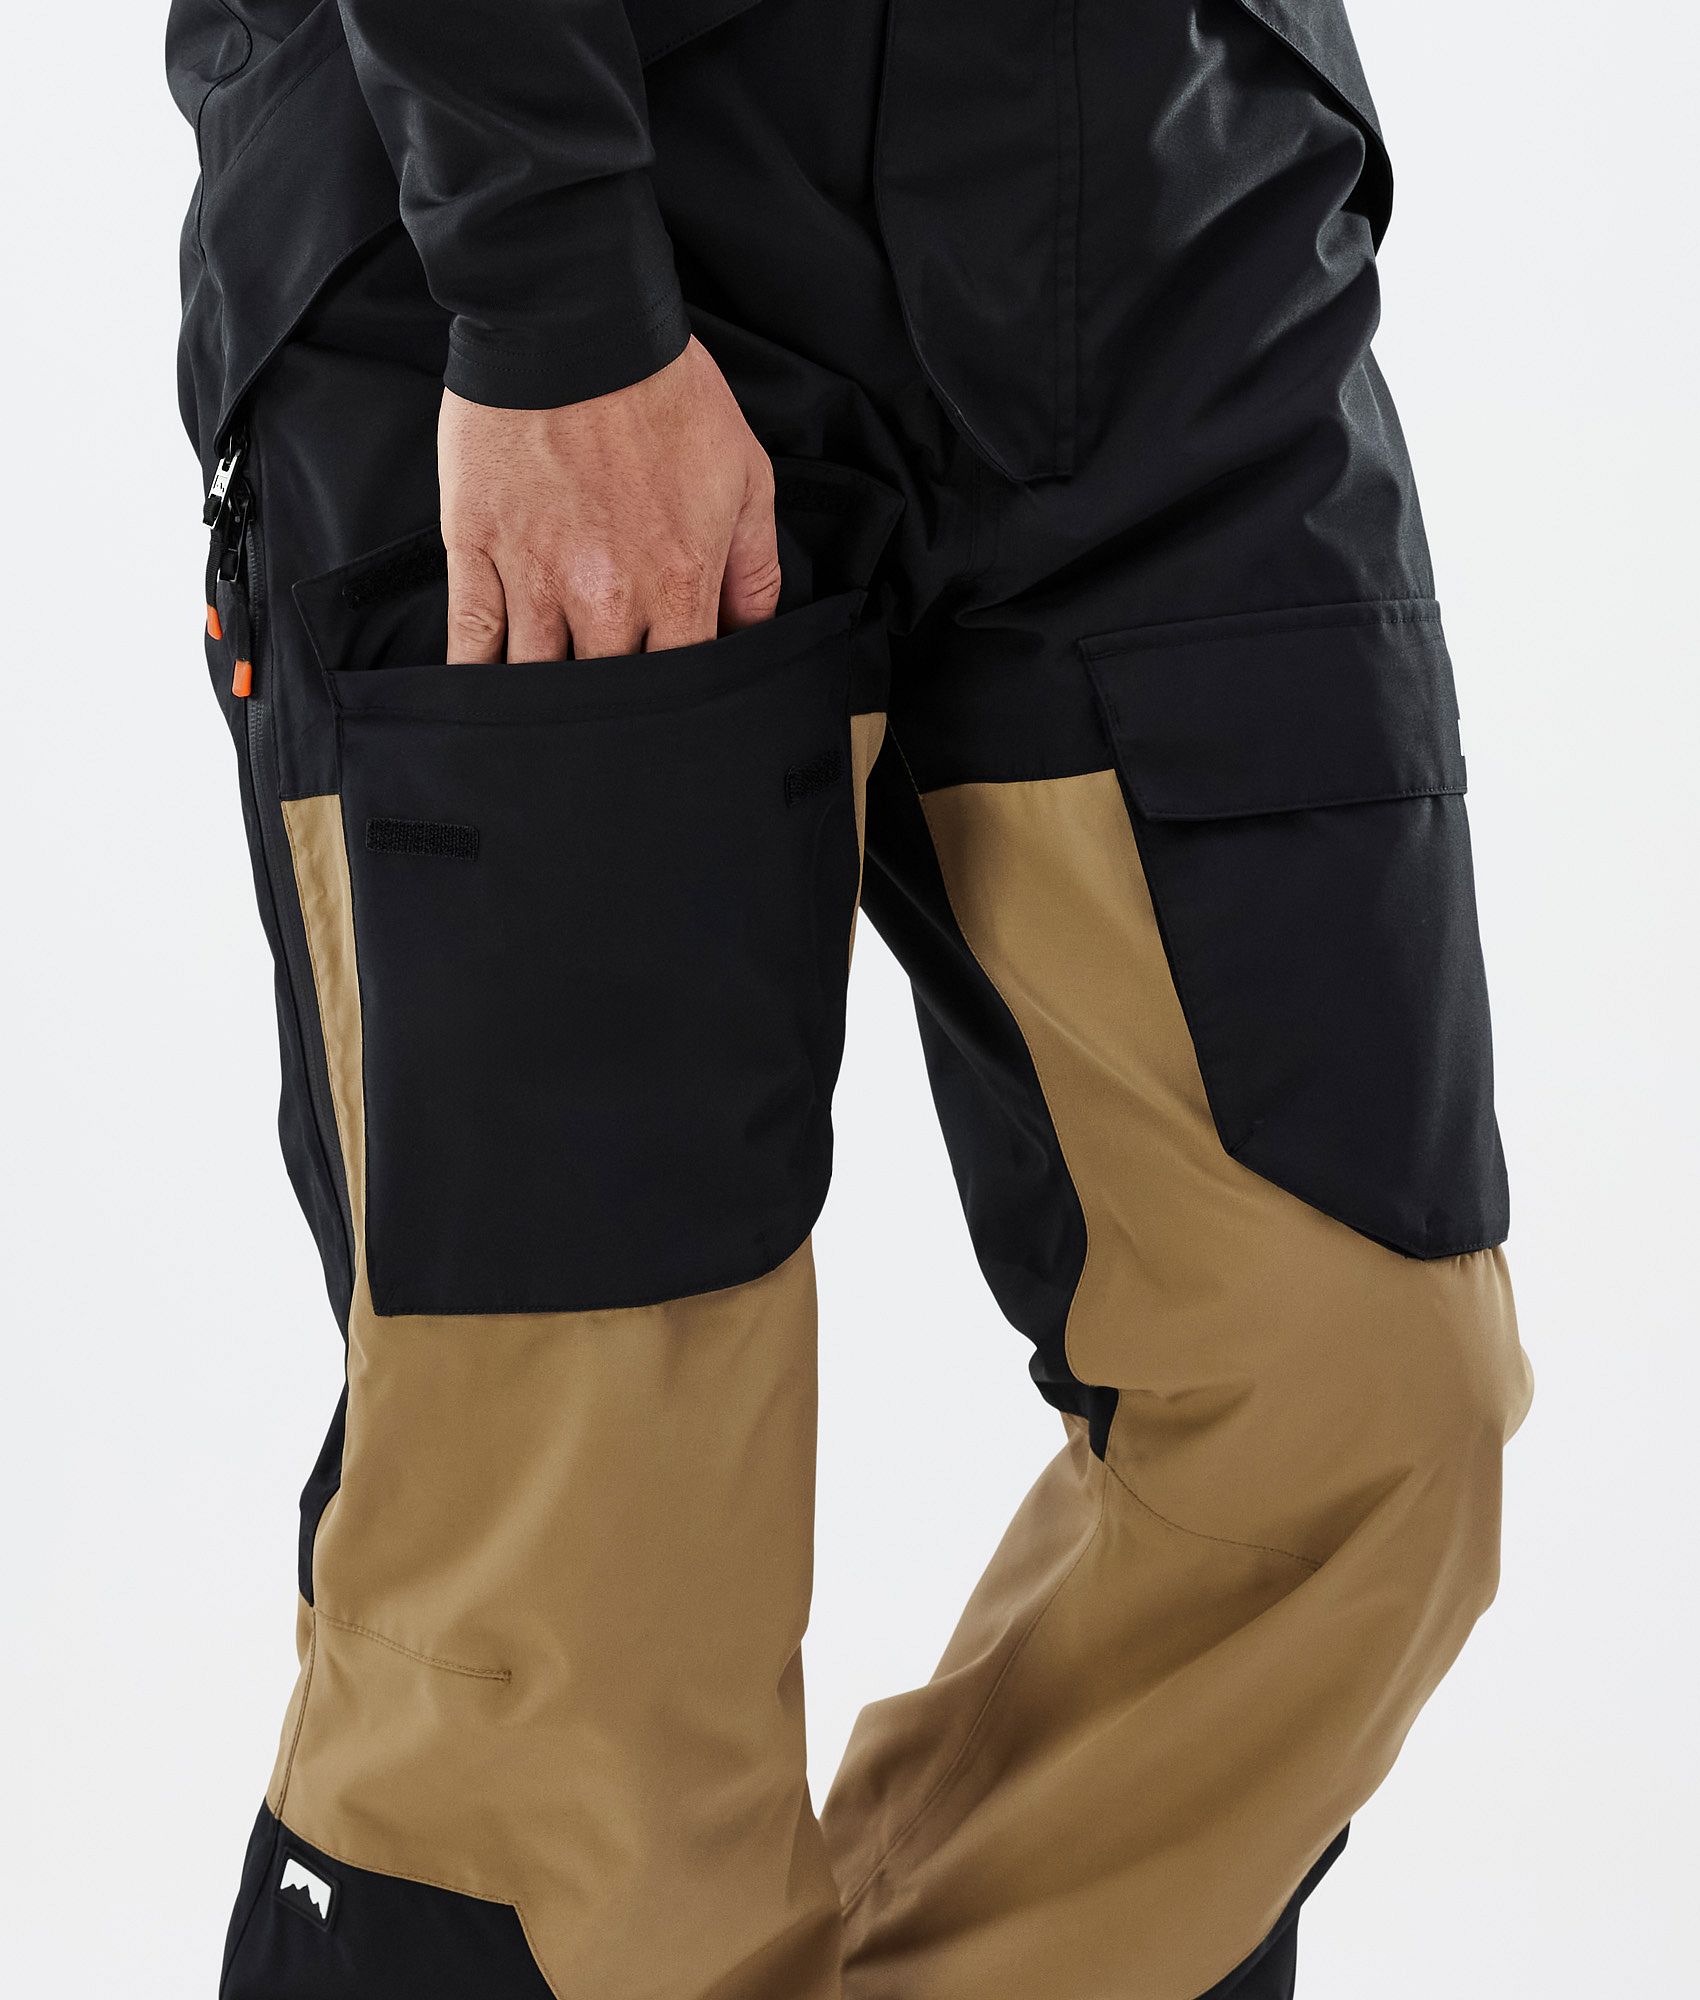 H M Men Khaki Pants|men's Slim Fit Plaid Pants - Business Casual Zipper Fly  Trousers